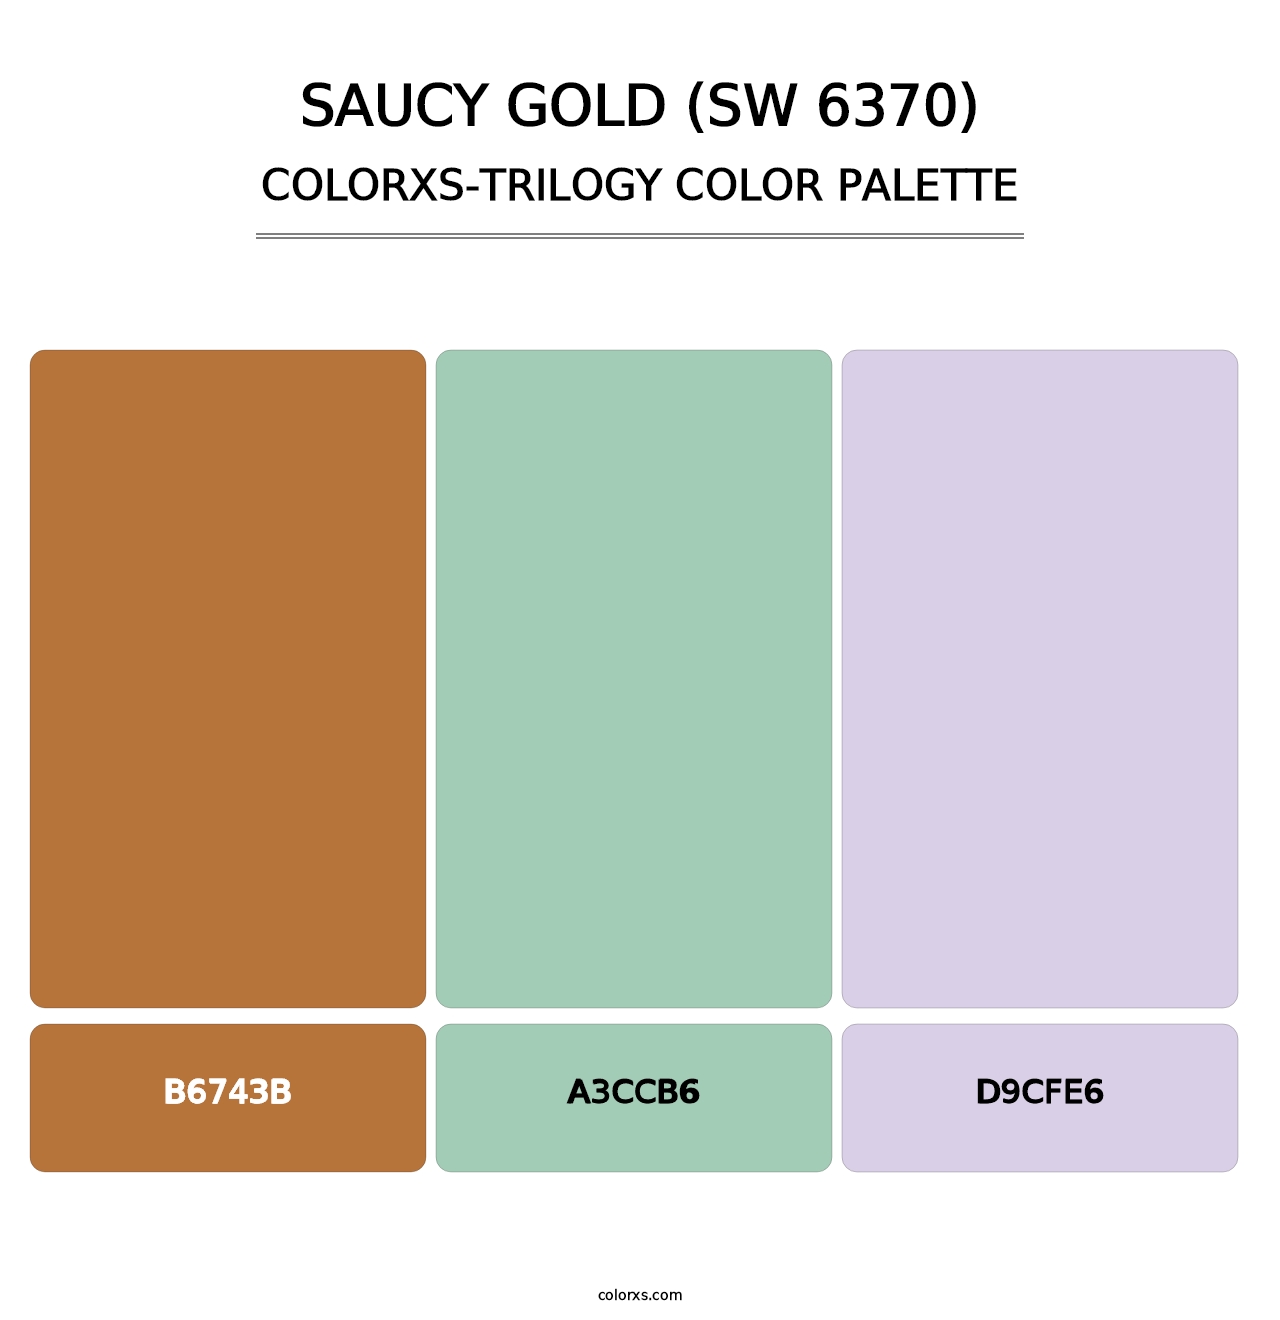 Saucy Gold (SW 6370) - Colorxs Trilogy Palette